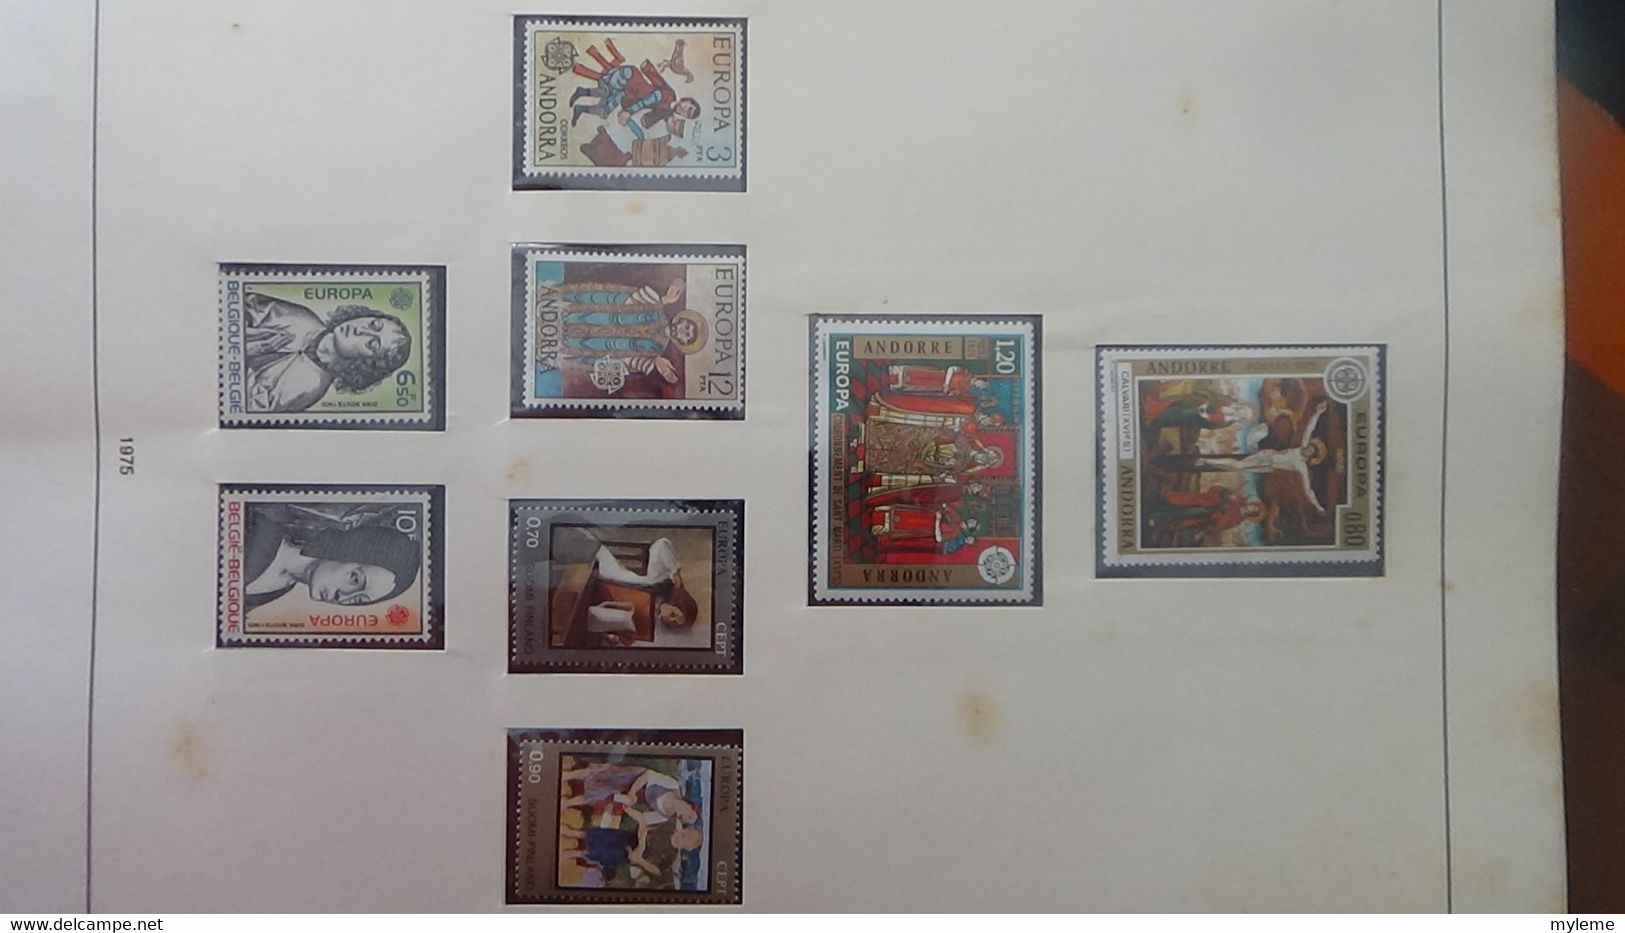 AE11 Collection Europa en reliure Safe Dual en 7 volumes dont timbres et blocs **. De 1973 à 1980 ...  A saisir !!!